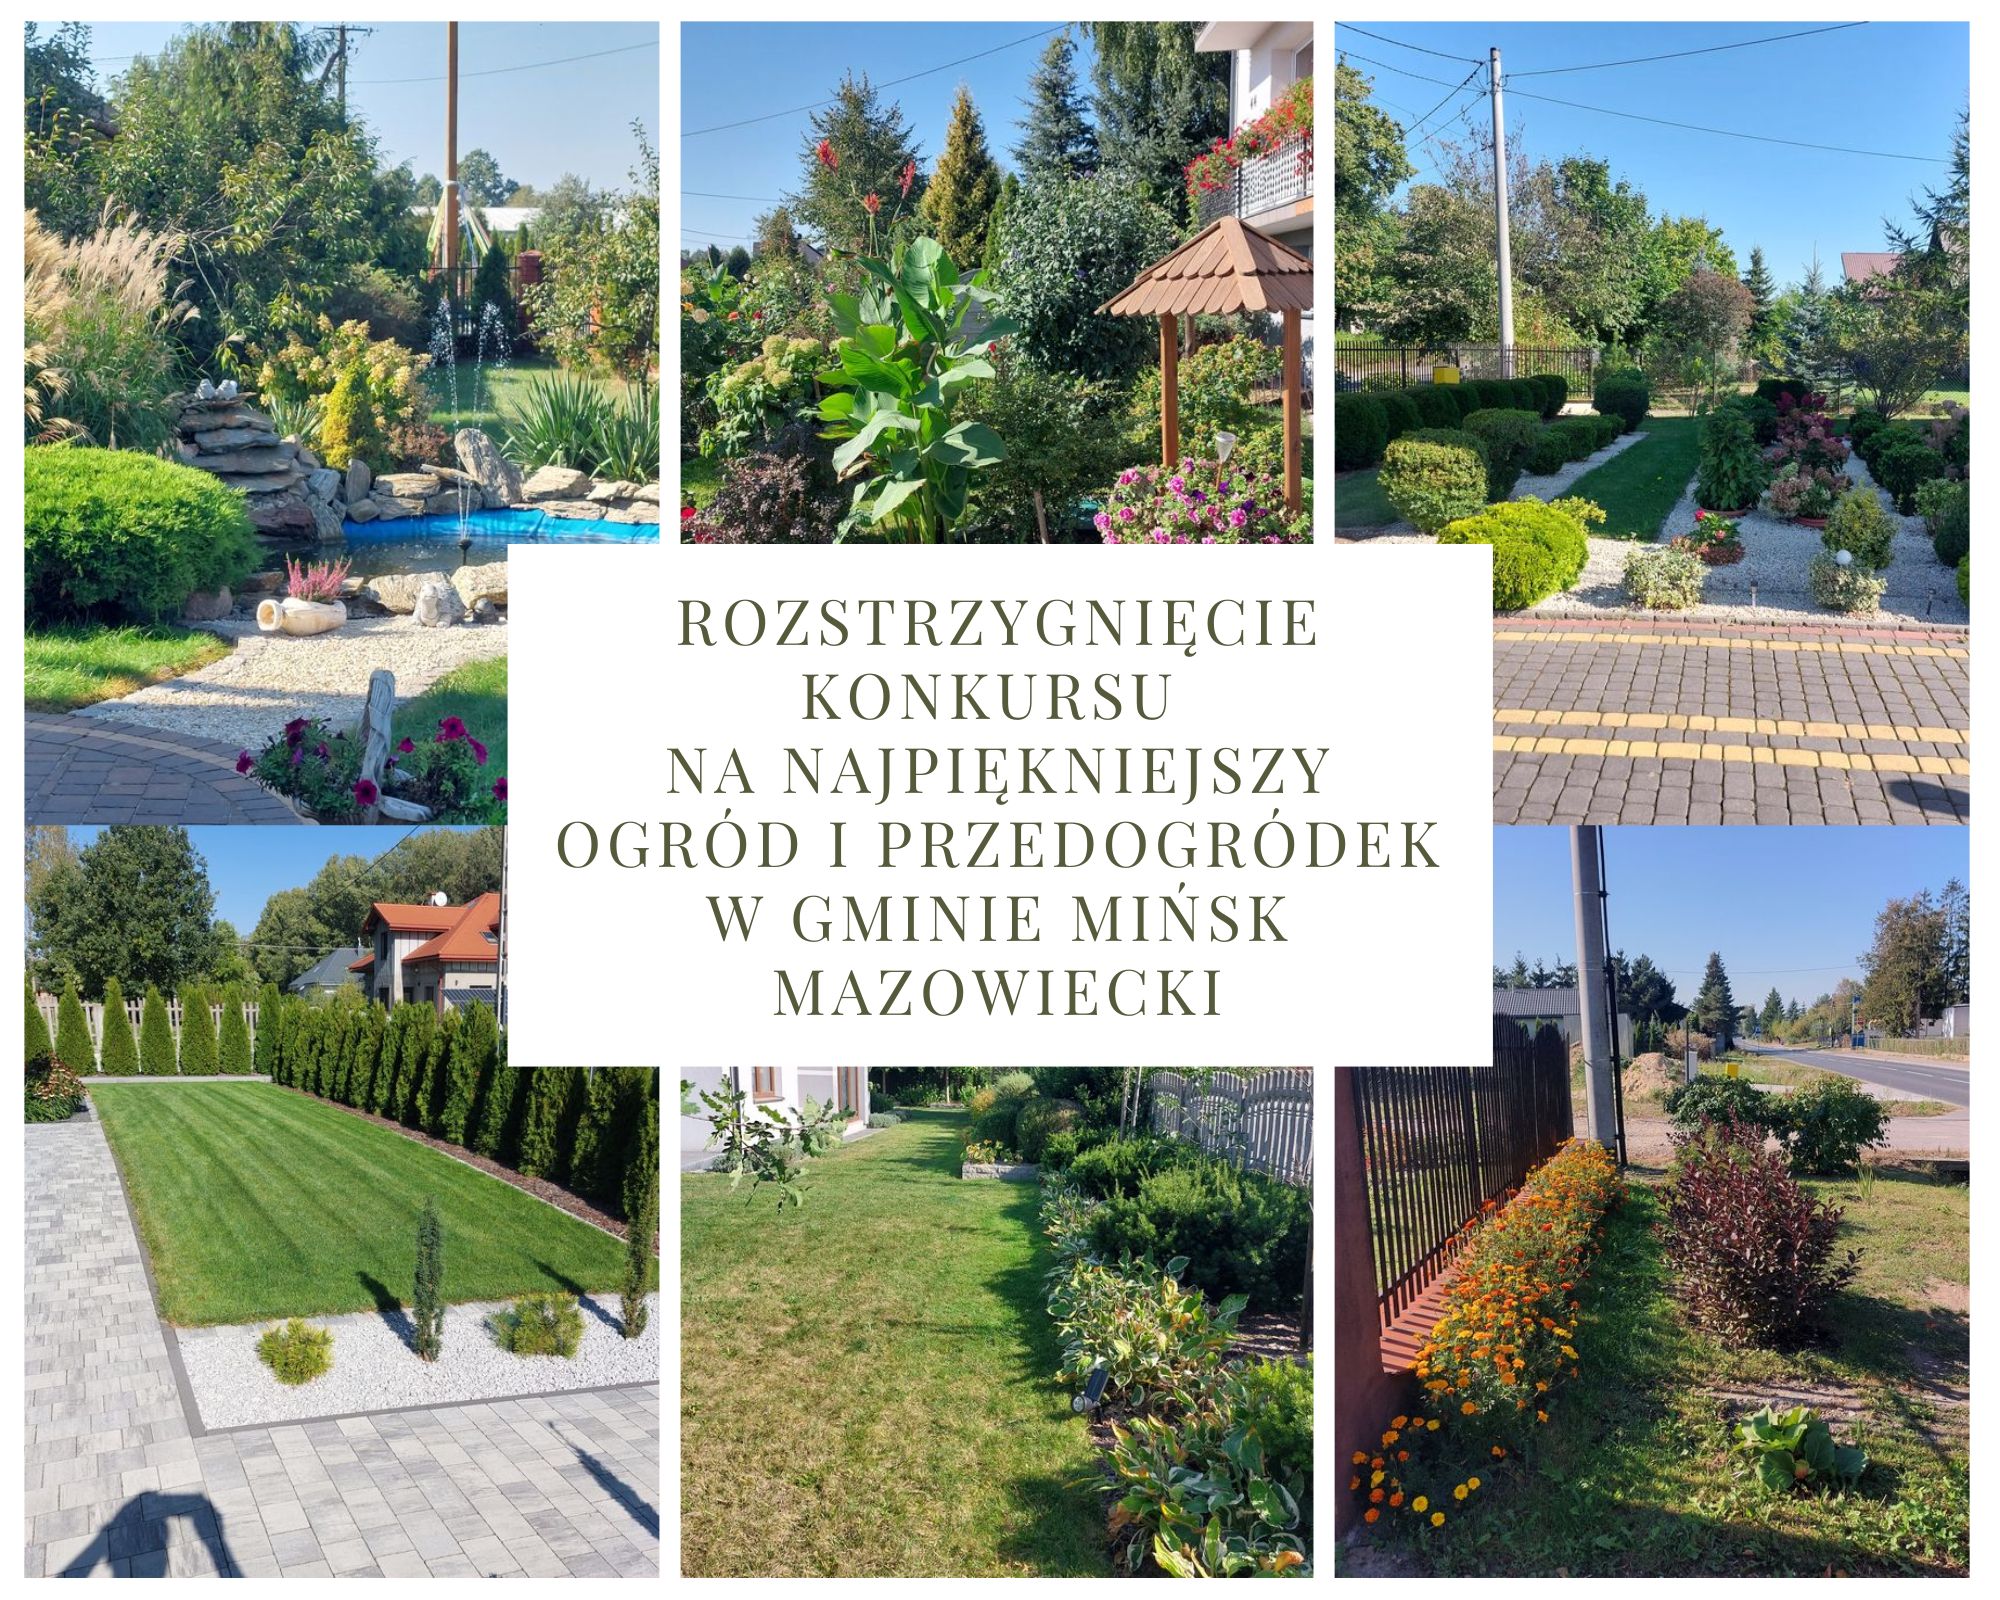 Rozstrzygnięcie konkursu "Najpiękniejszy ogród i przedogródek w Gminie Mińsk Mazowiecki"